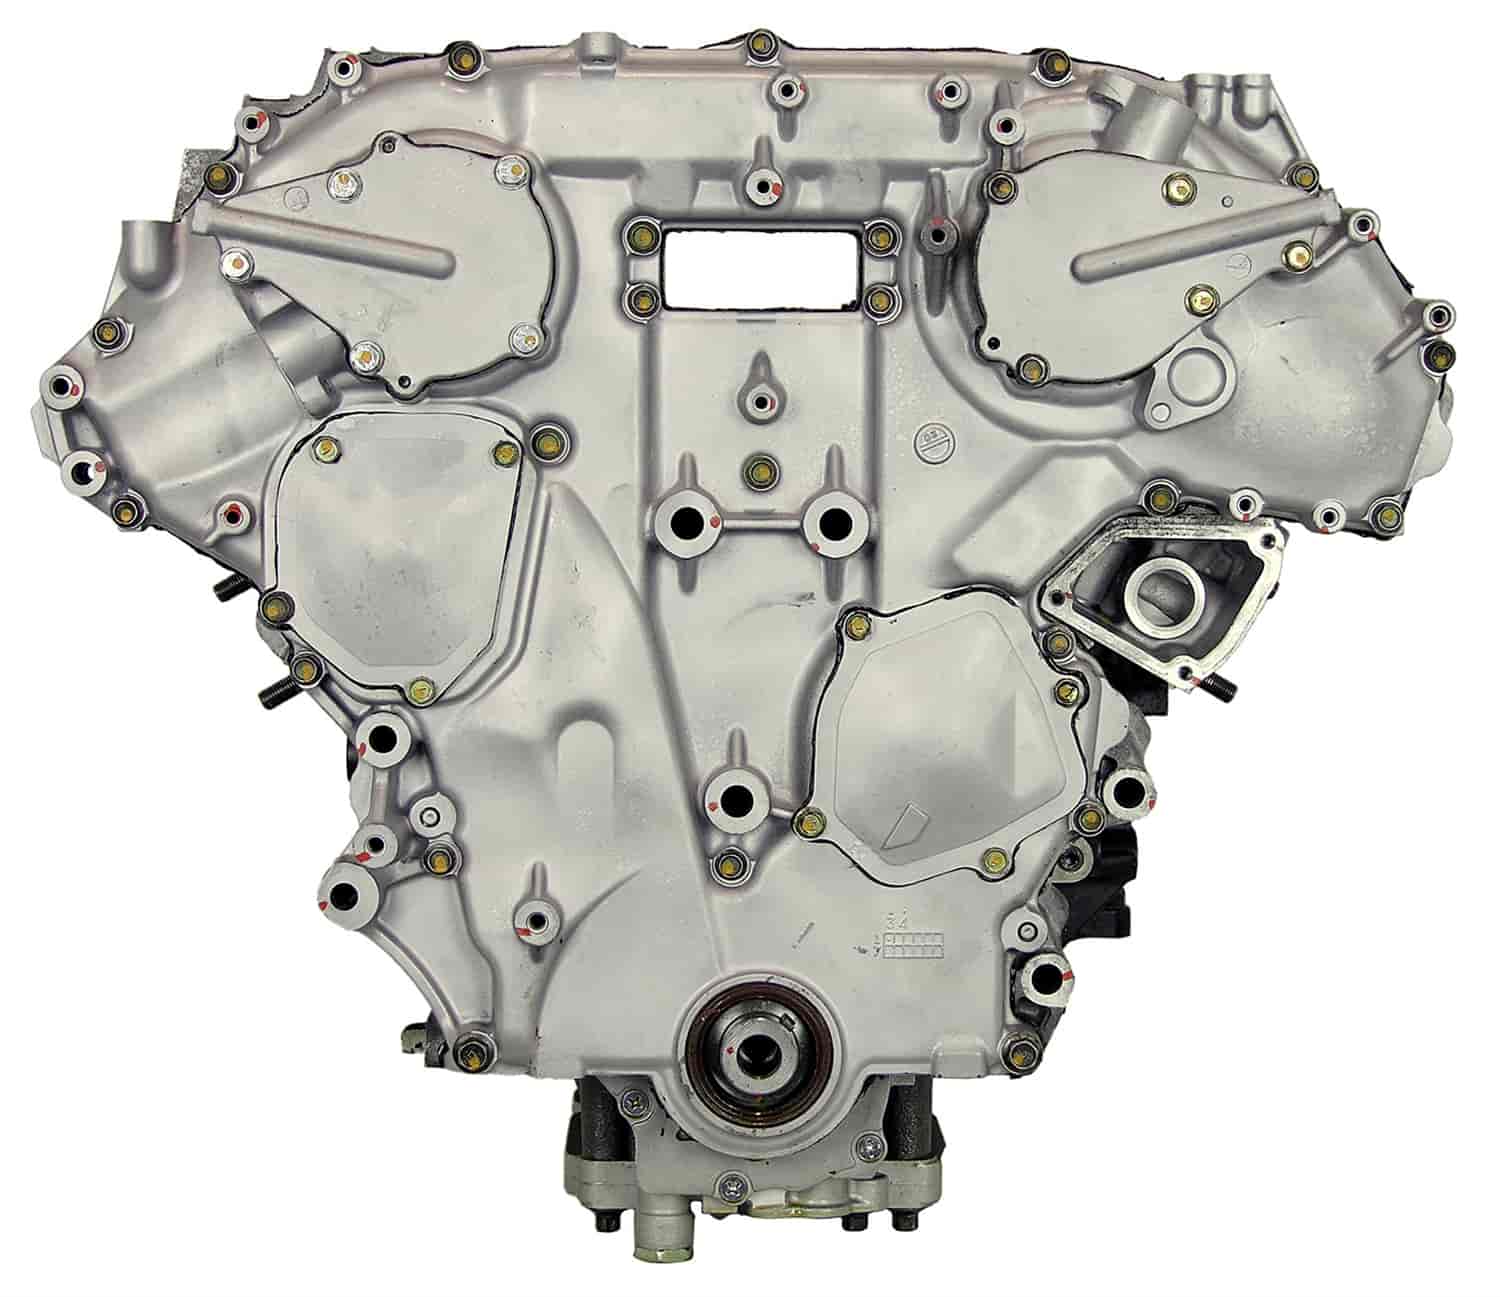 Remanufactured Crate Engine for 2002-2004 Nissan Pathfinder with 3.5L V6 VQ35DE